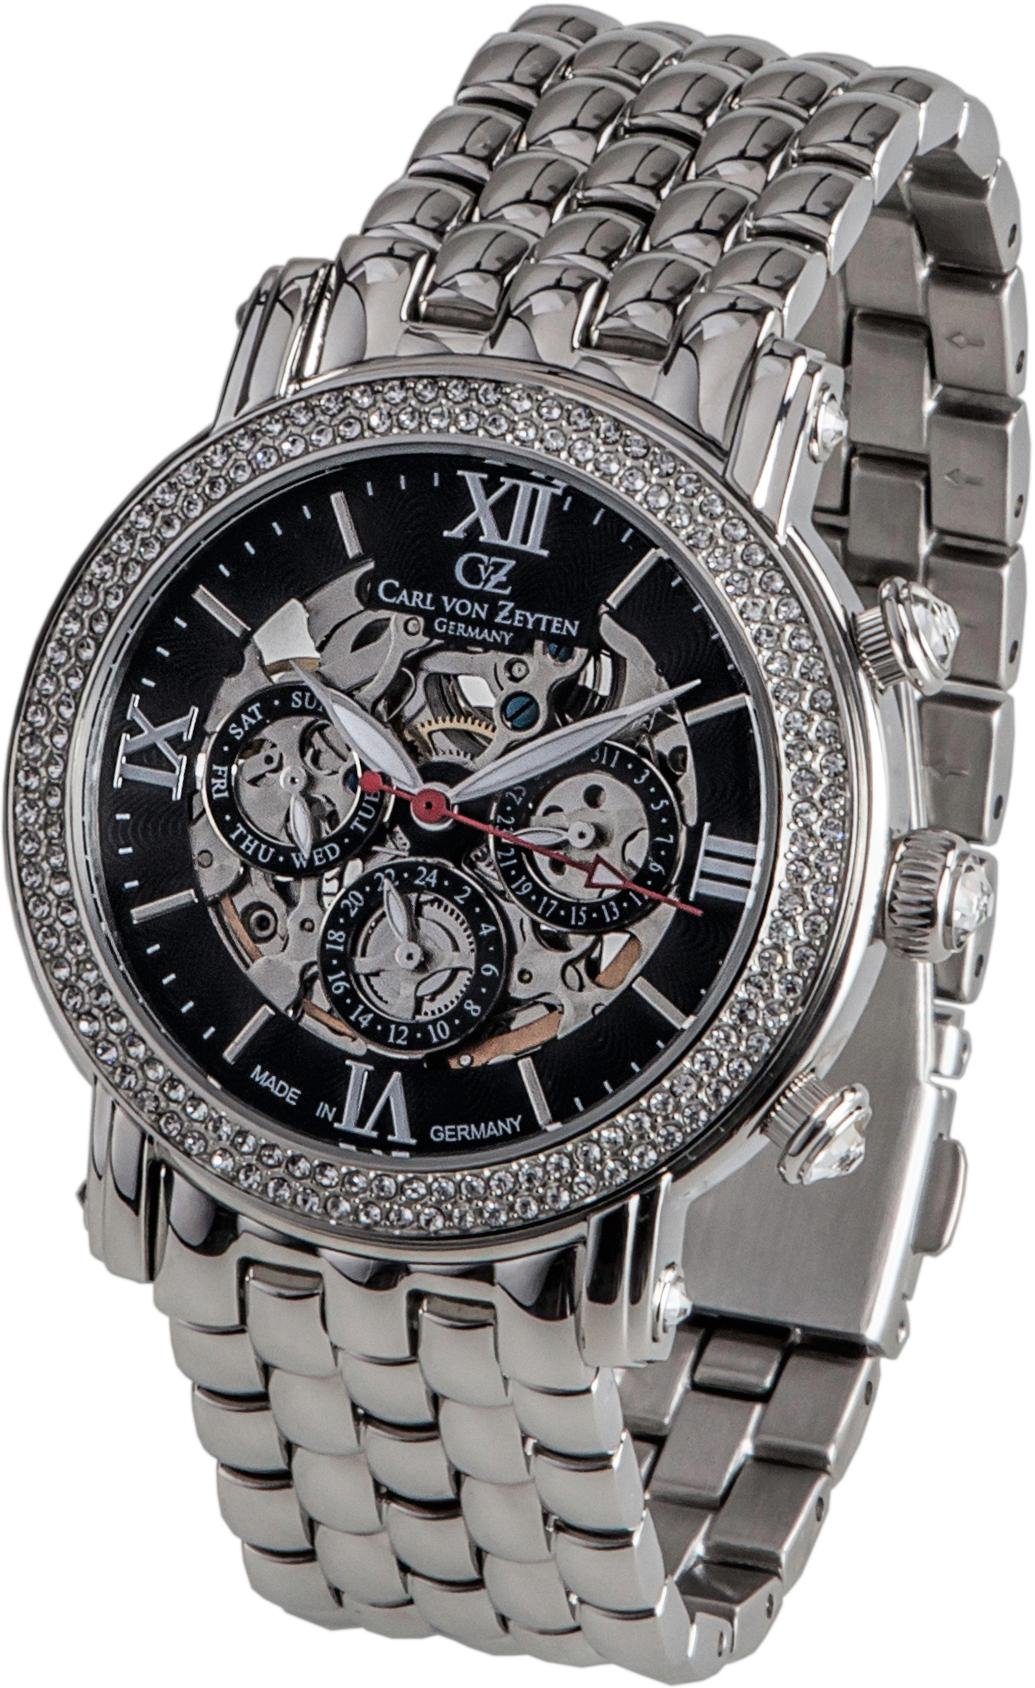 Carl von Zeyten Automatikuhr Kniebis, CVZ0062BKMS, Armbanduhr, Damenuhr, Made in Germany, Mechanische Uhr, Datum